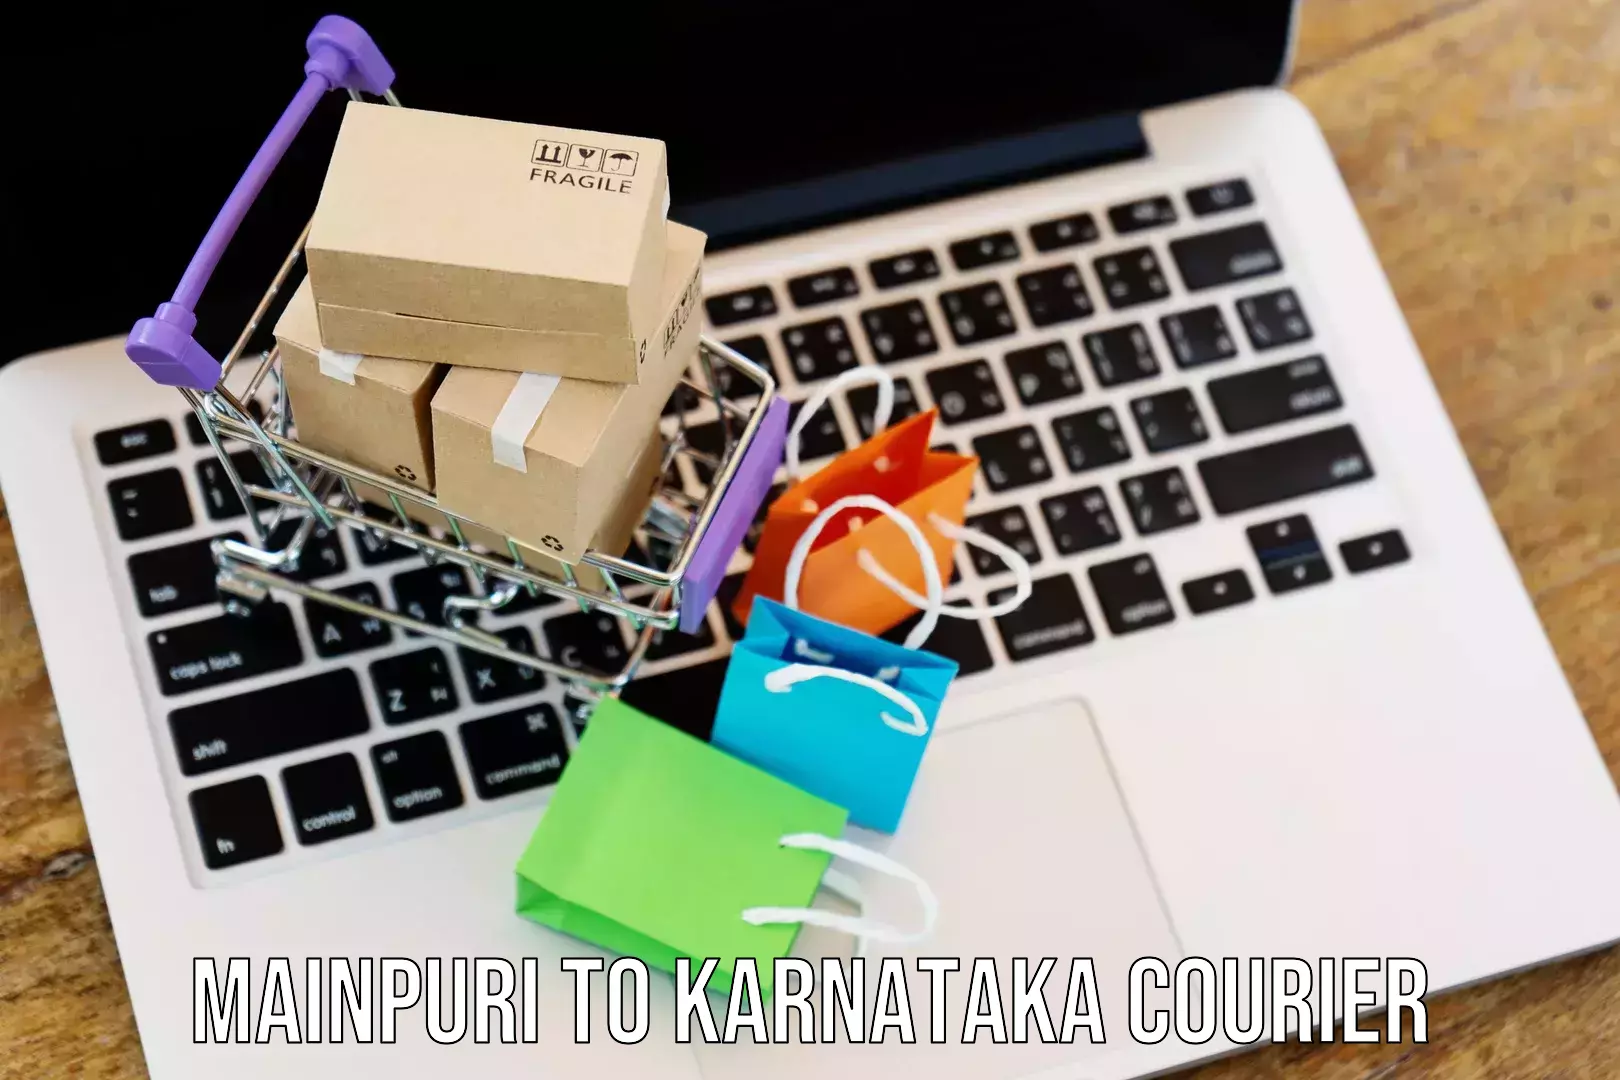 Efficient cargo handling Mainpuri to Karnataka